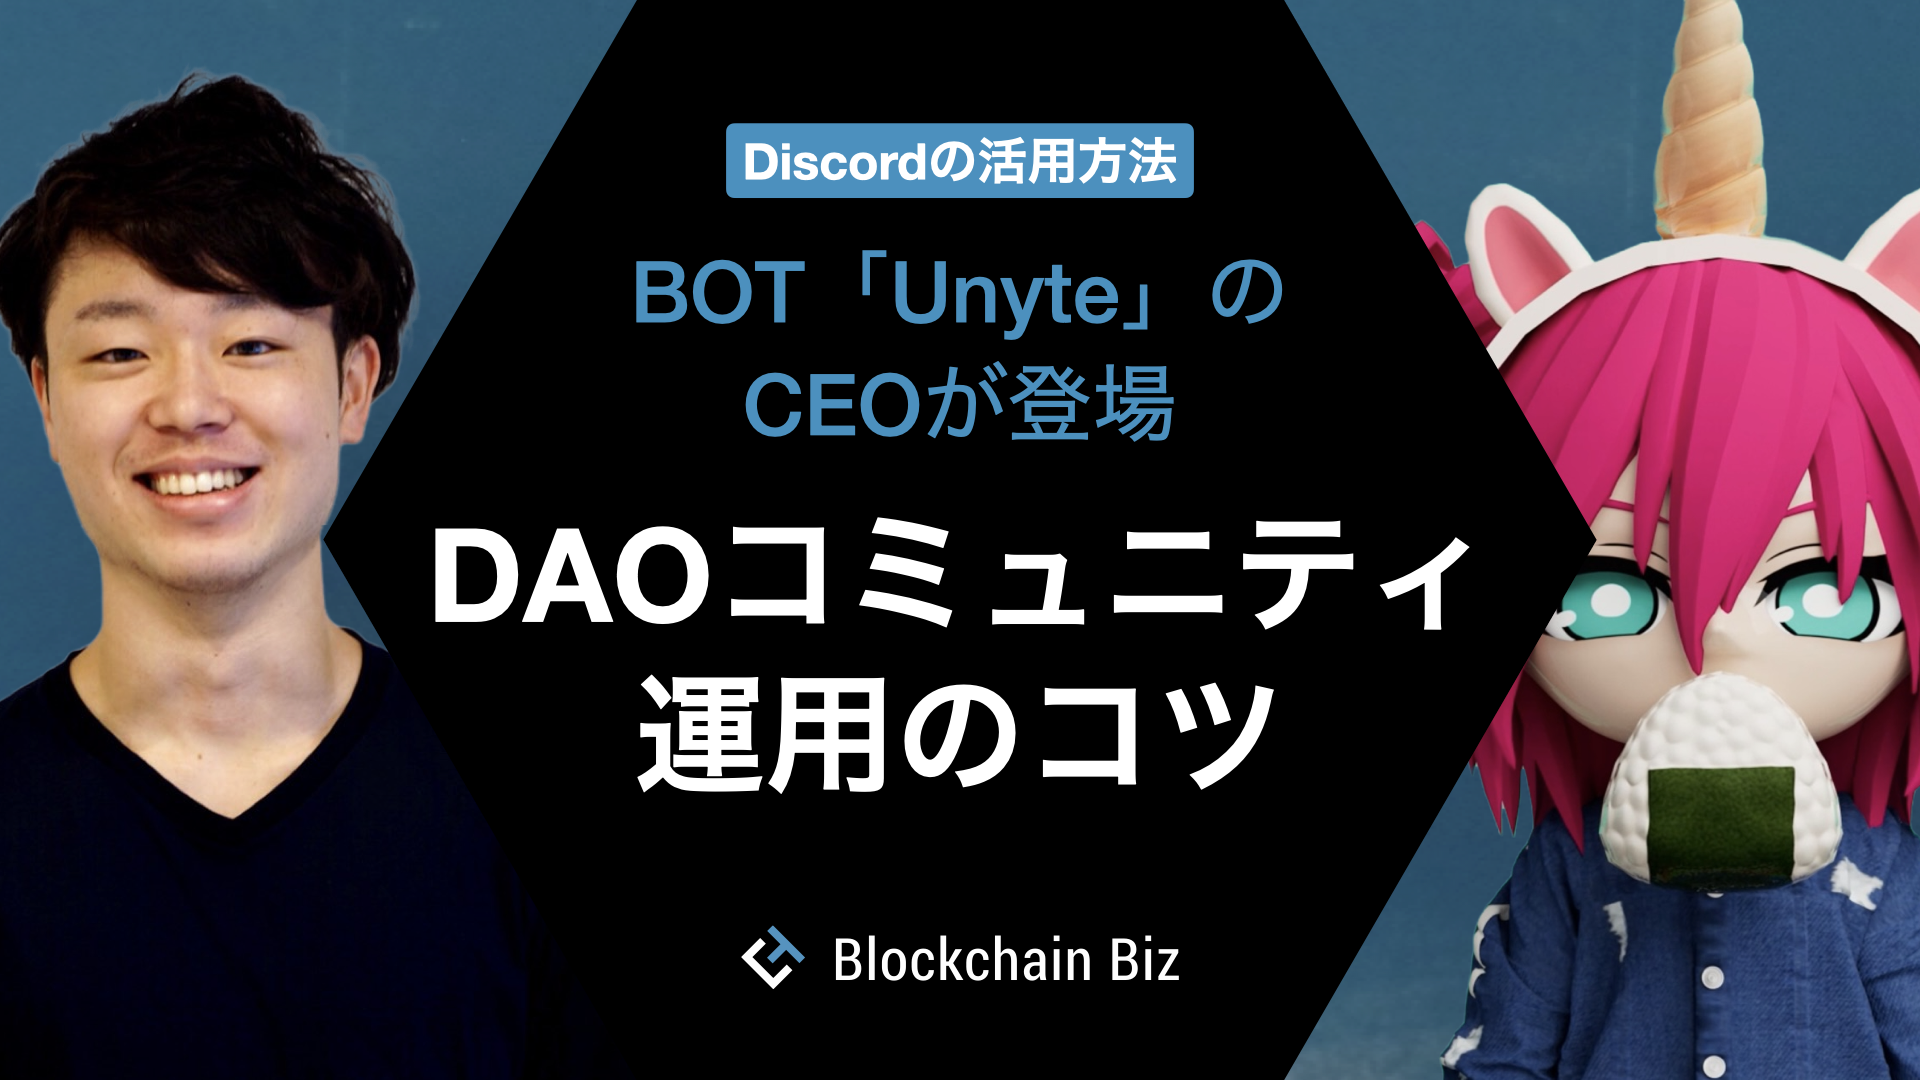 Discordの活用方法 DAOコミュニティ運用のコツ – BOT「Unyte」のCEOが登場